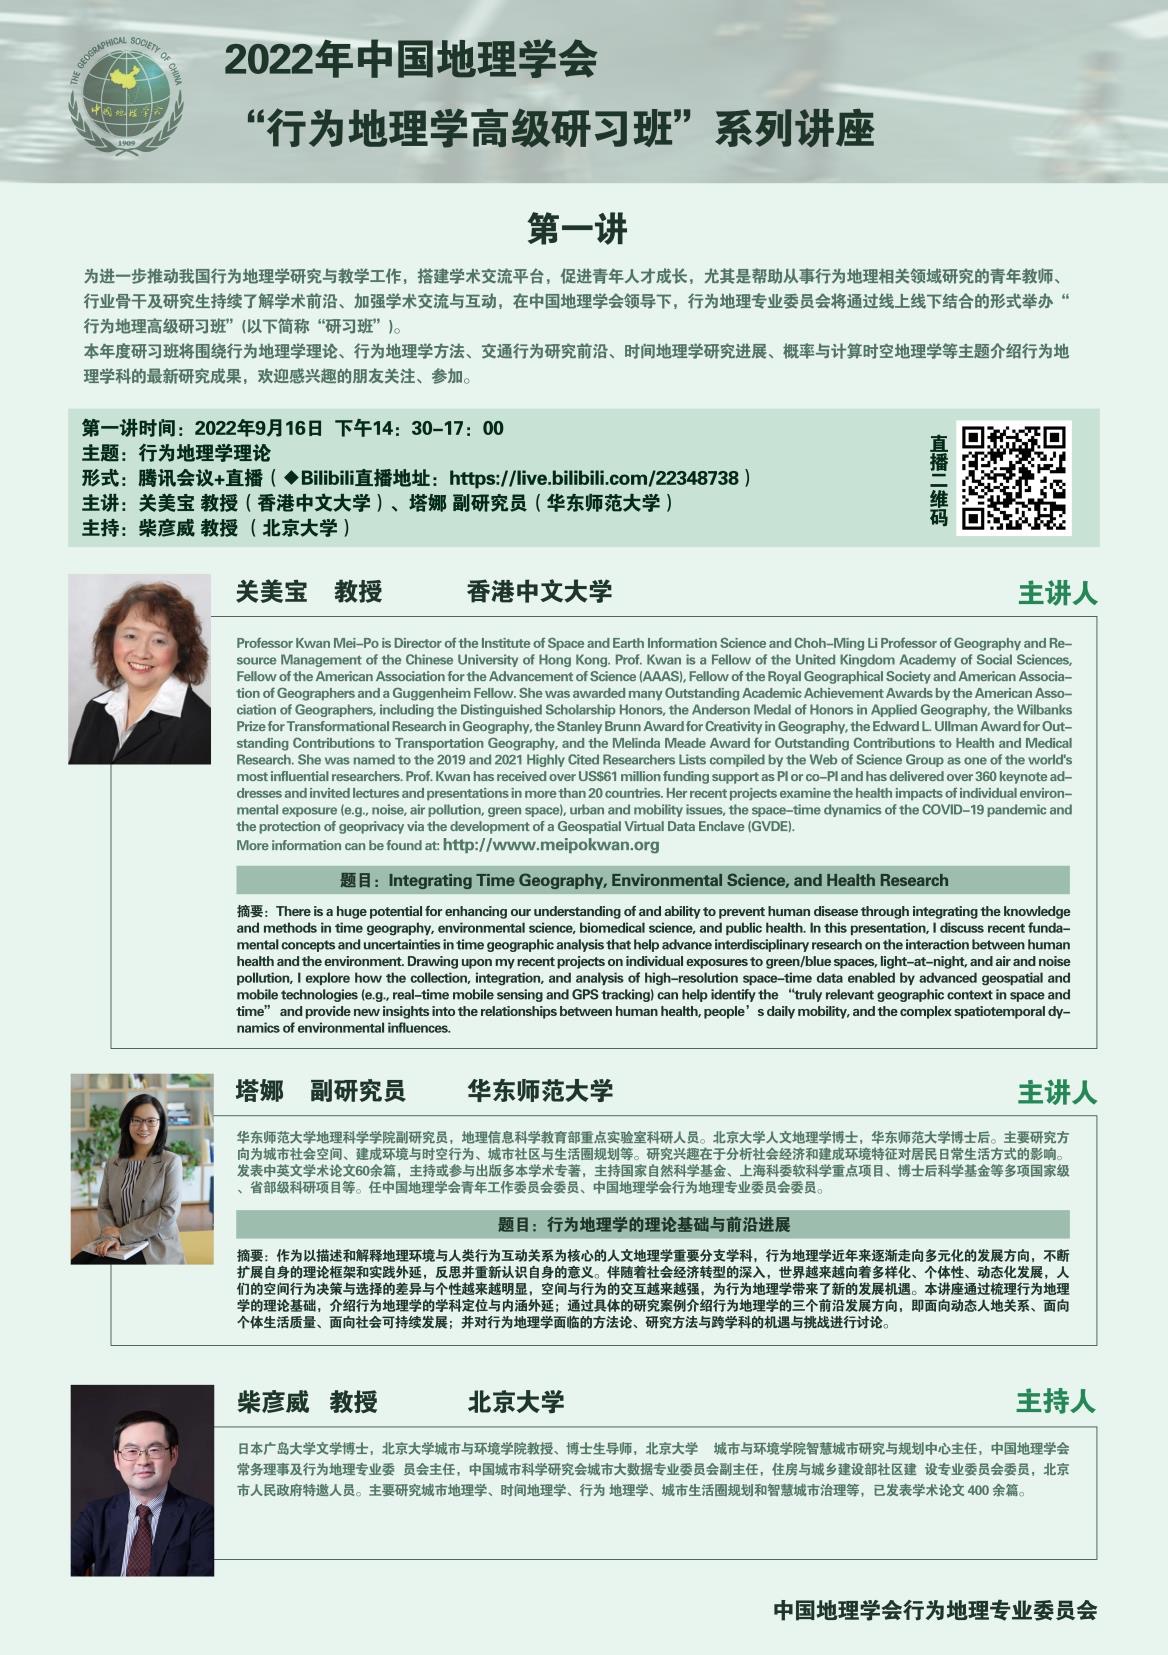 Prof Kwan will the speaker in 中國地理學會